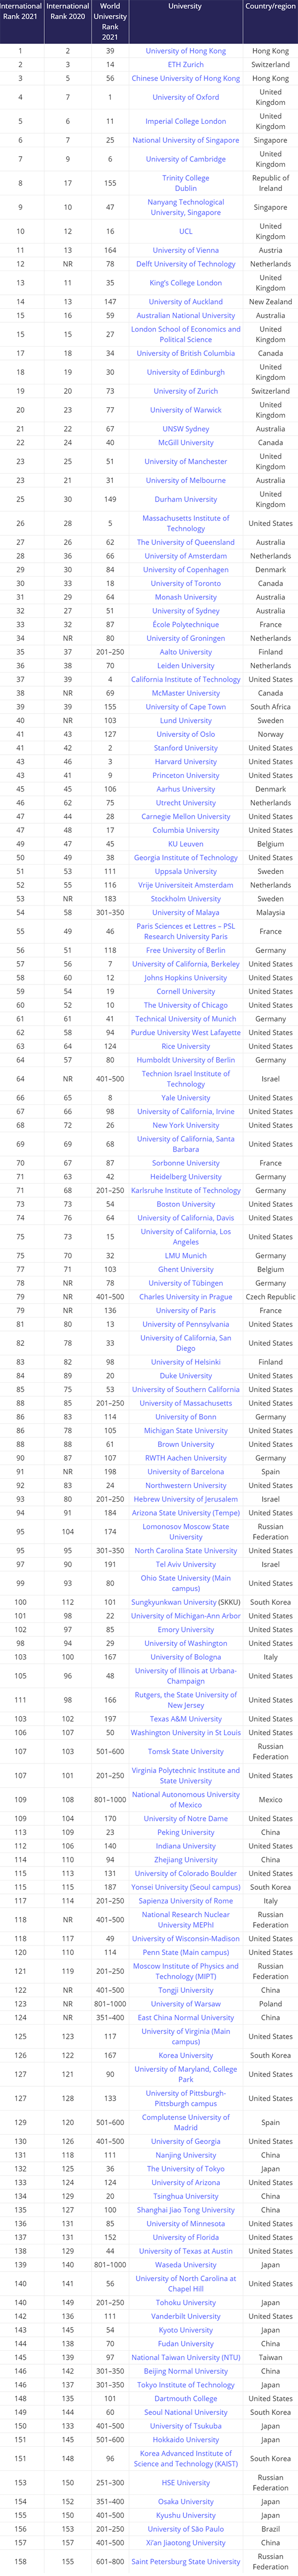 排名法国大学qs_法国大学排名_法国大学排名